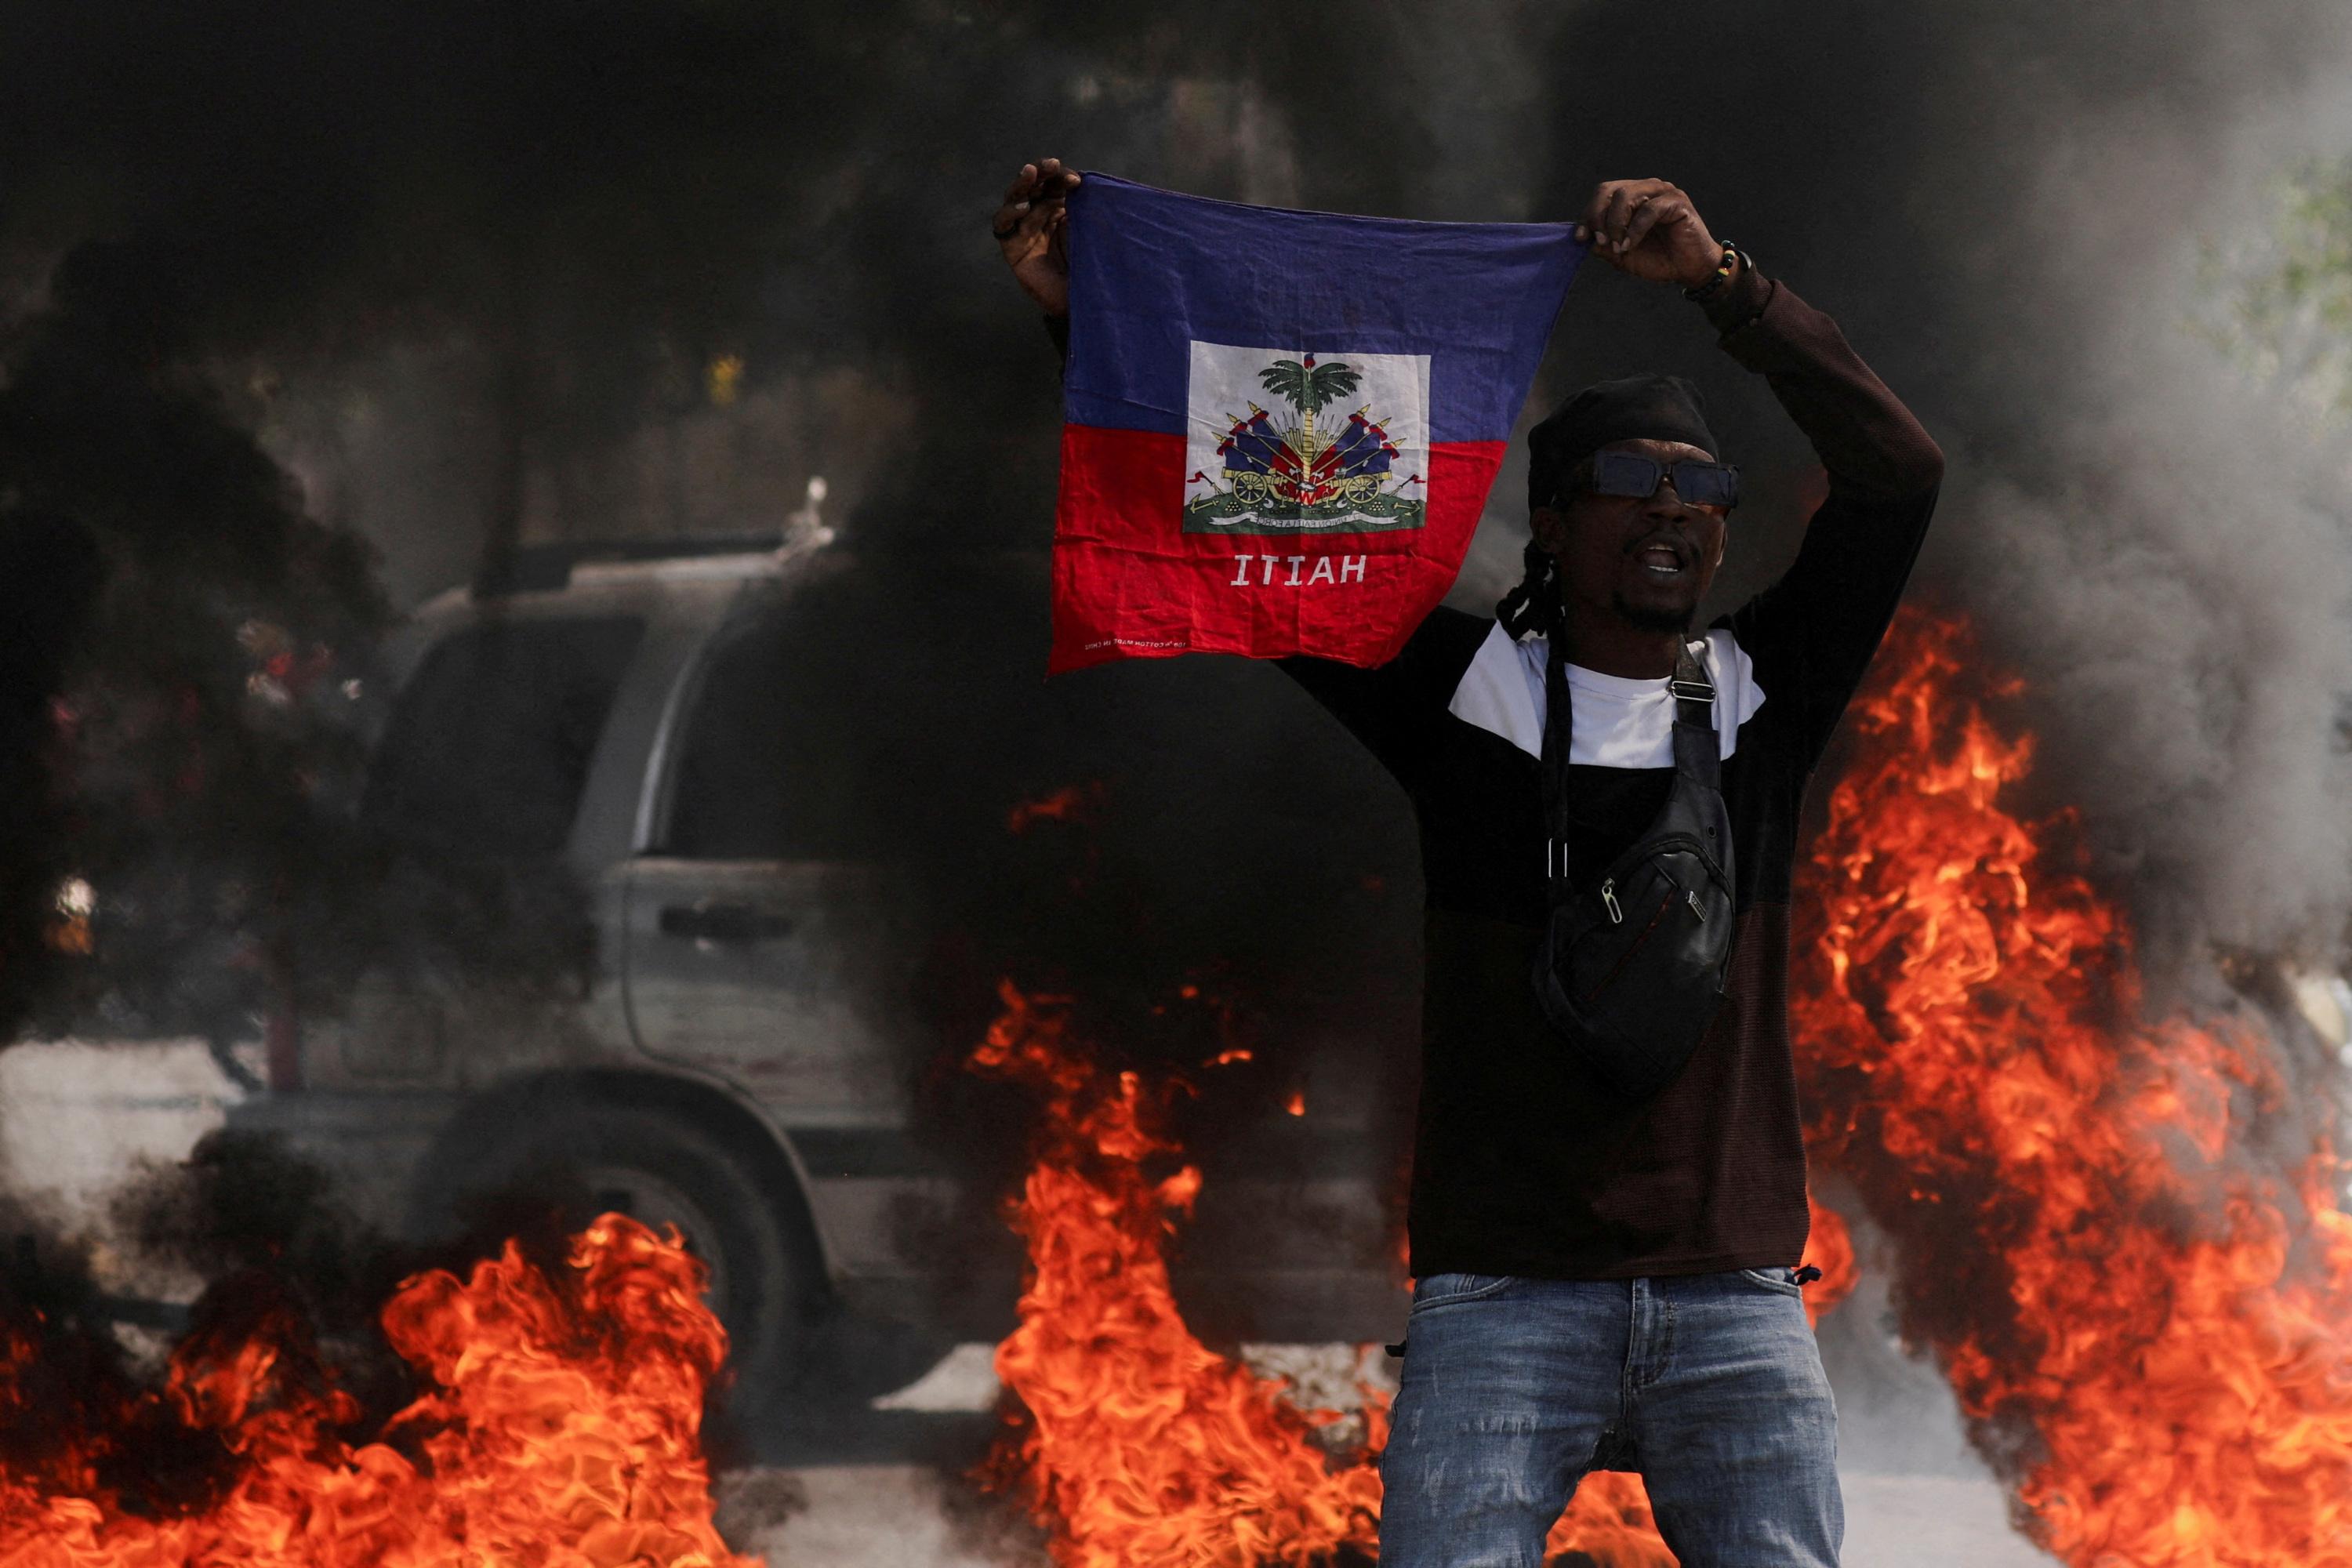 évasions massives, affrontements, couvre-feu... nouvelle poussée de violence entre gangs et autorités à haïti